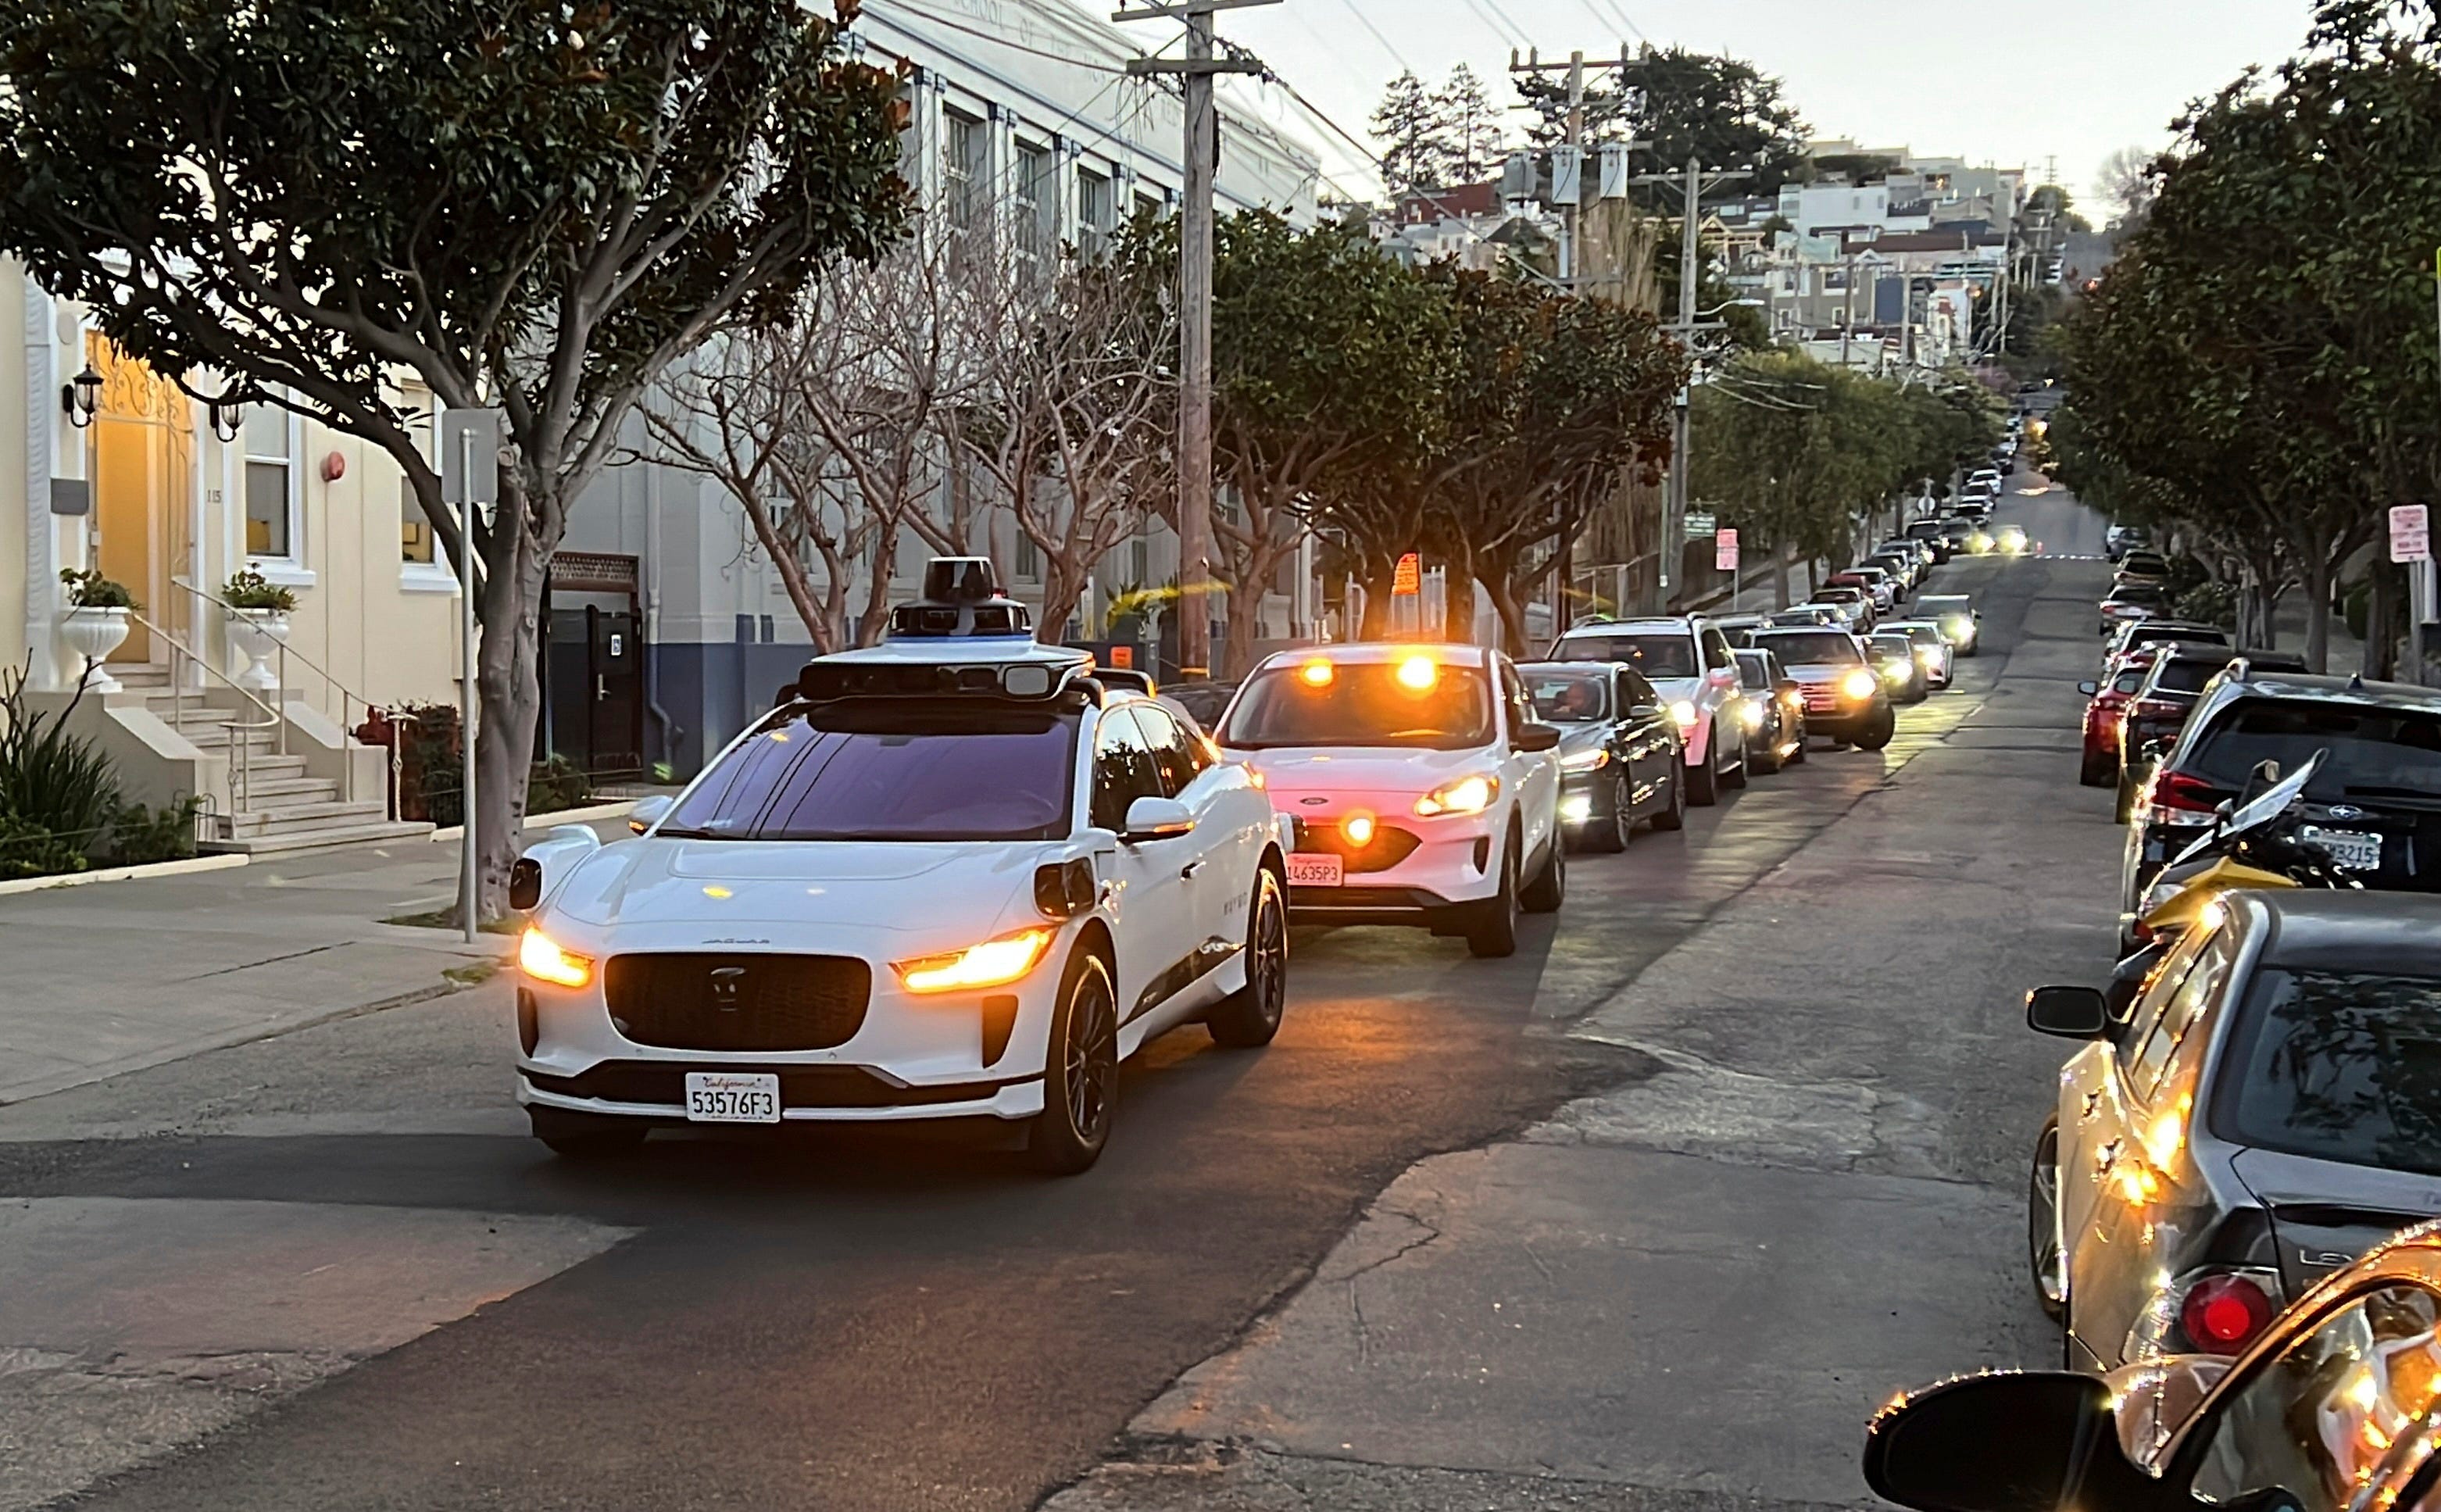 une voiture blanche bloque une file de voitures qui attendent derrière elle dans une rue de la ville. C'est un taxi autonome Waymo.